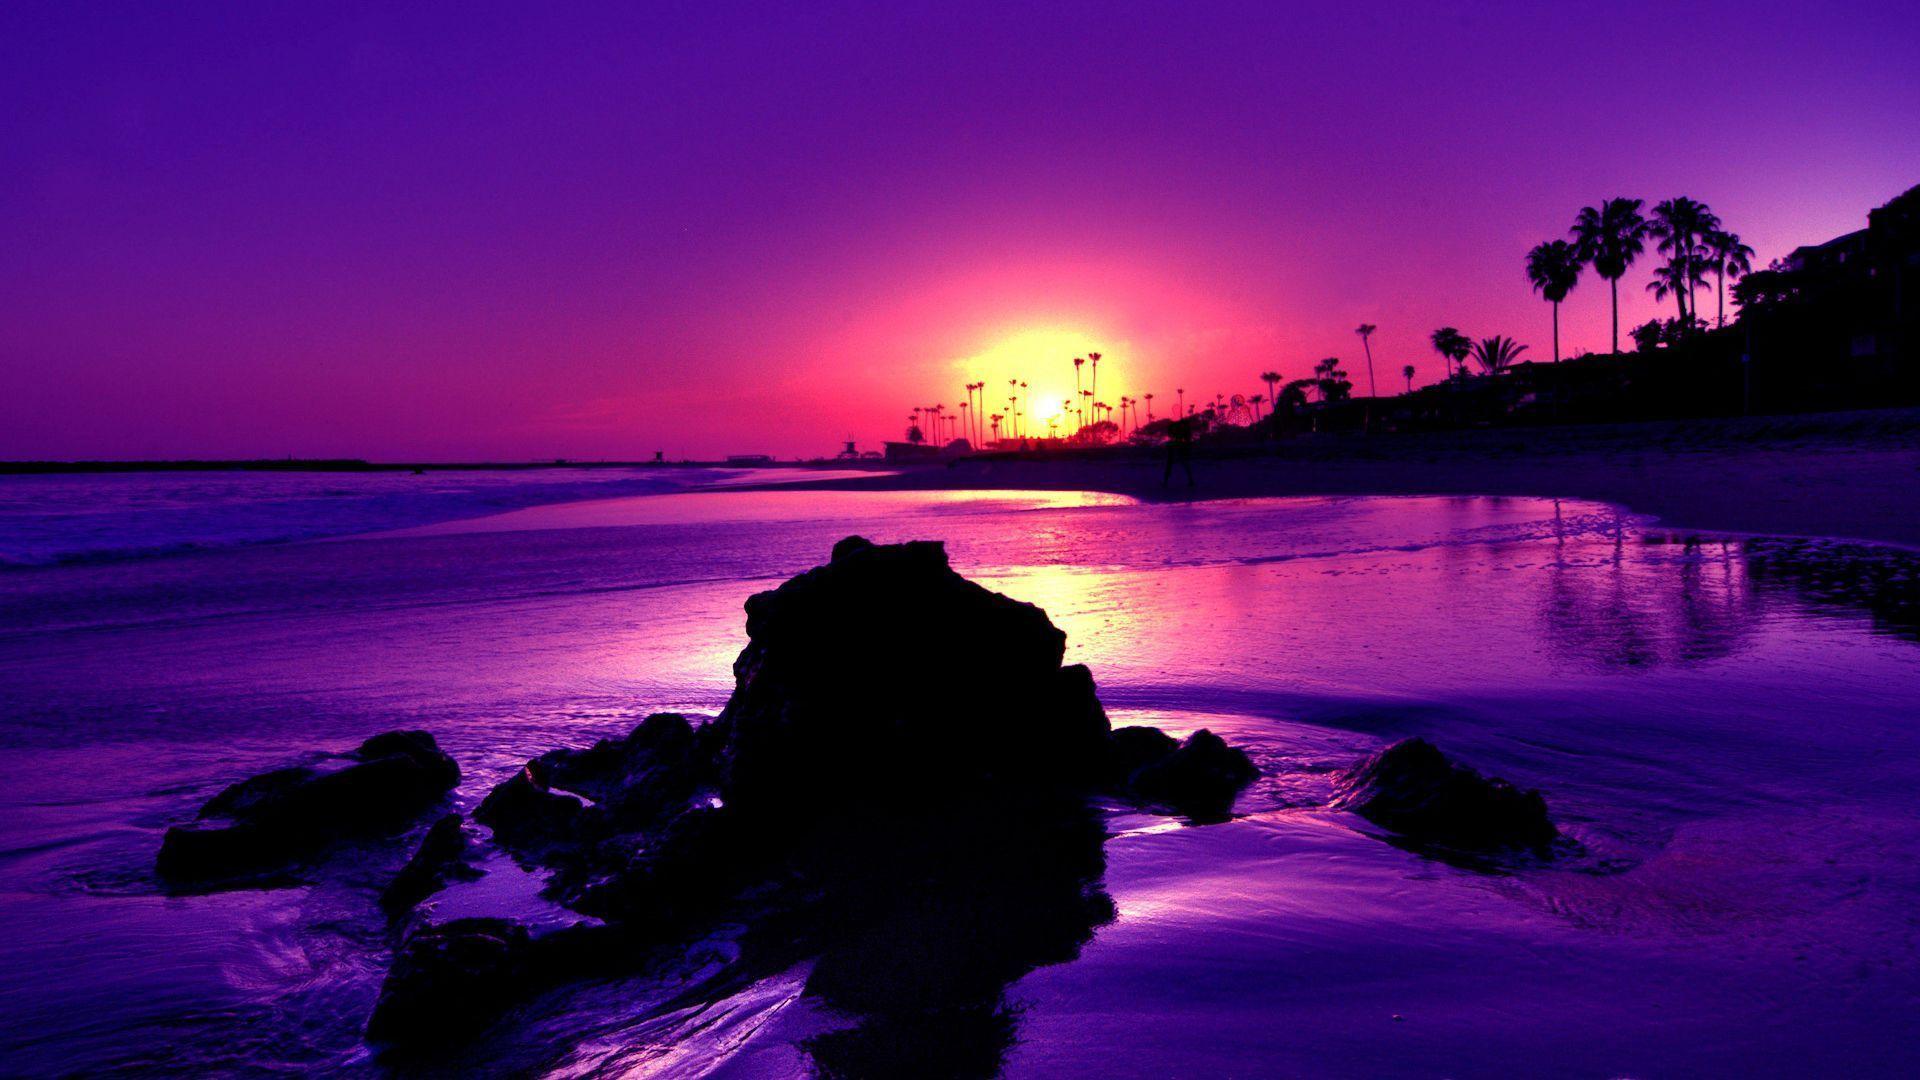 1920x1080 Ocean Sunset Wallpaper - Beach Sunset Background Purple